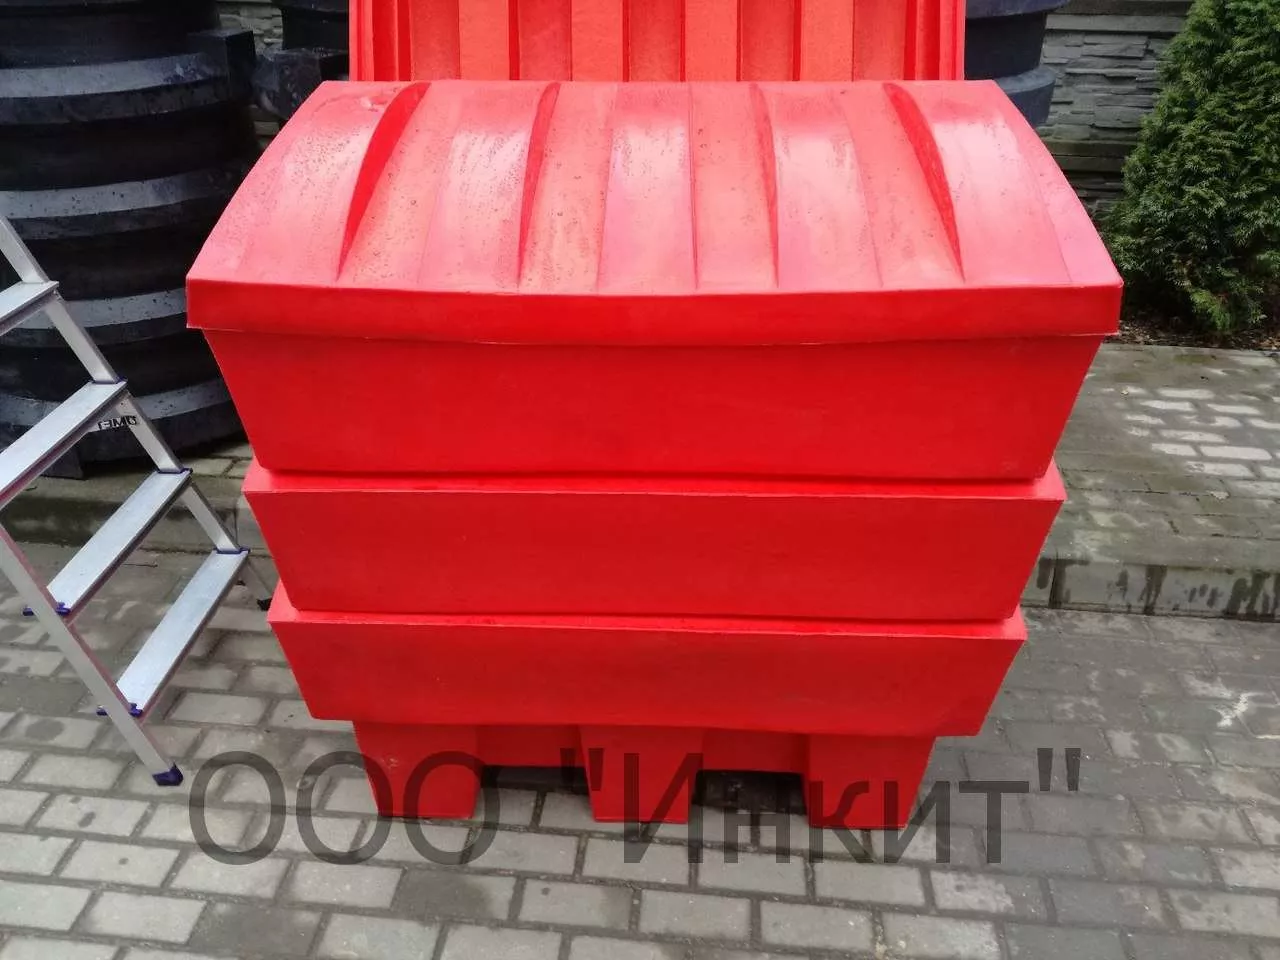 Пластиковый ящик для песка и соли 250 литров, красный